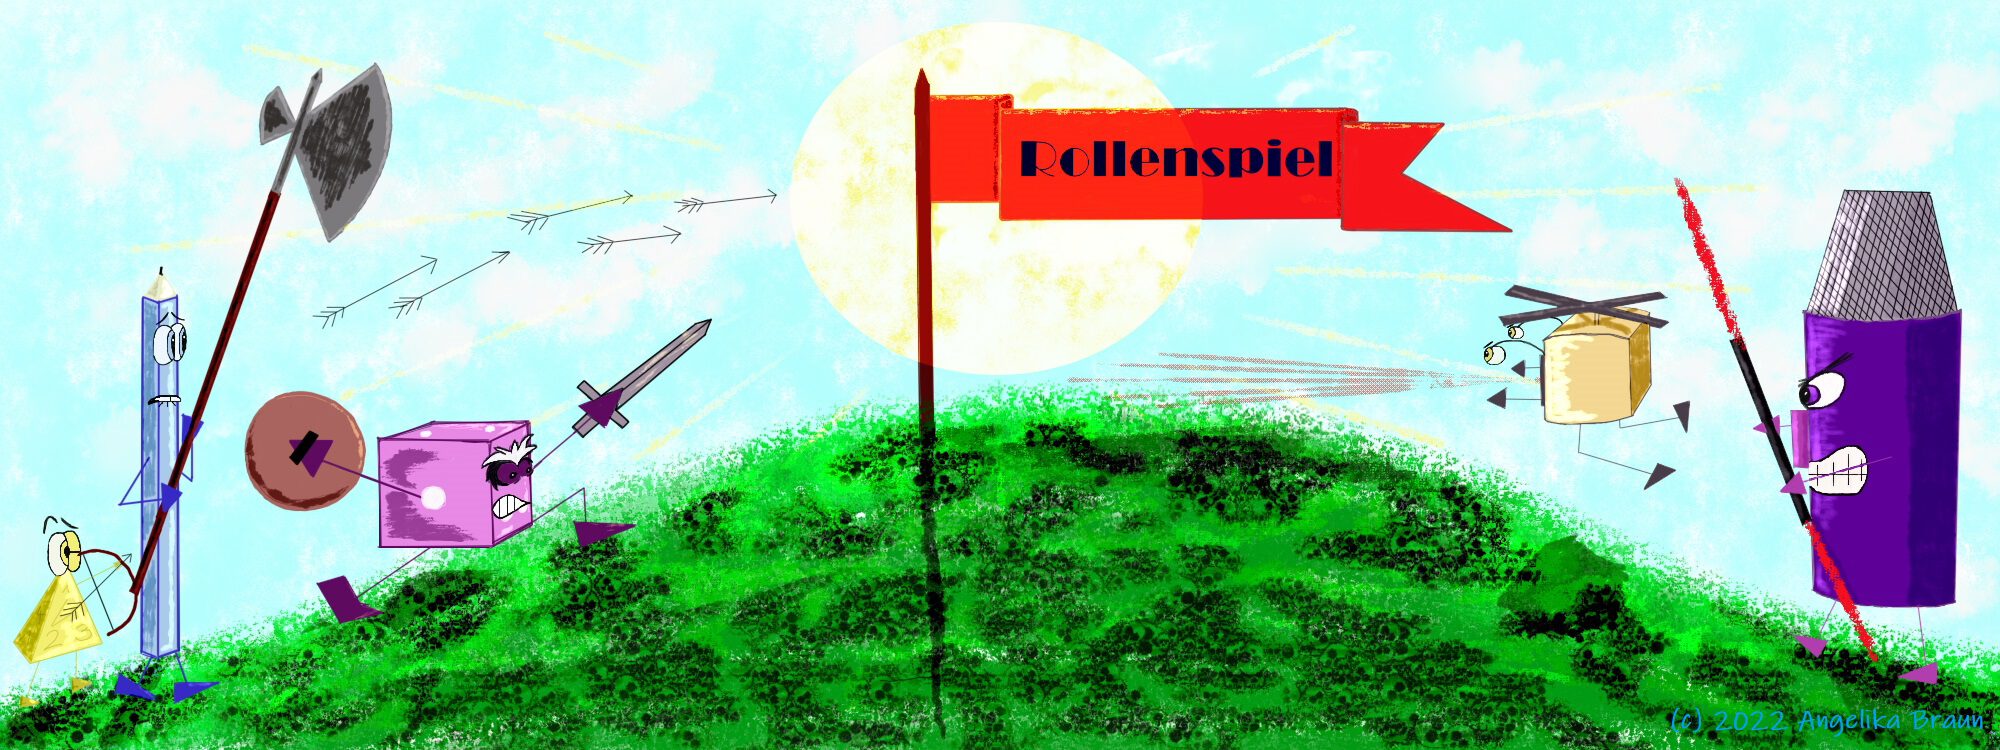 Ein Hügel mit einer roten Flagge, auf der "Rollenspiel" steht; von links stürmen ein W4, ein Stift und ein W6 bewaffnet mit Schwert, Schild und Bogen den Hügel, von Rechts kommen eine Webcam und ein Micro, beide ebenfalls bewaffnet